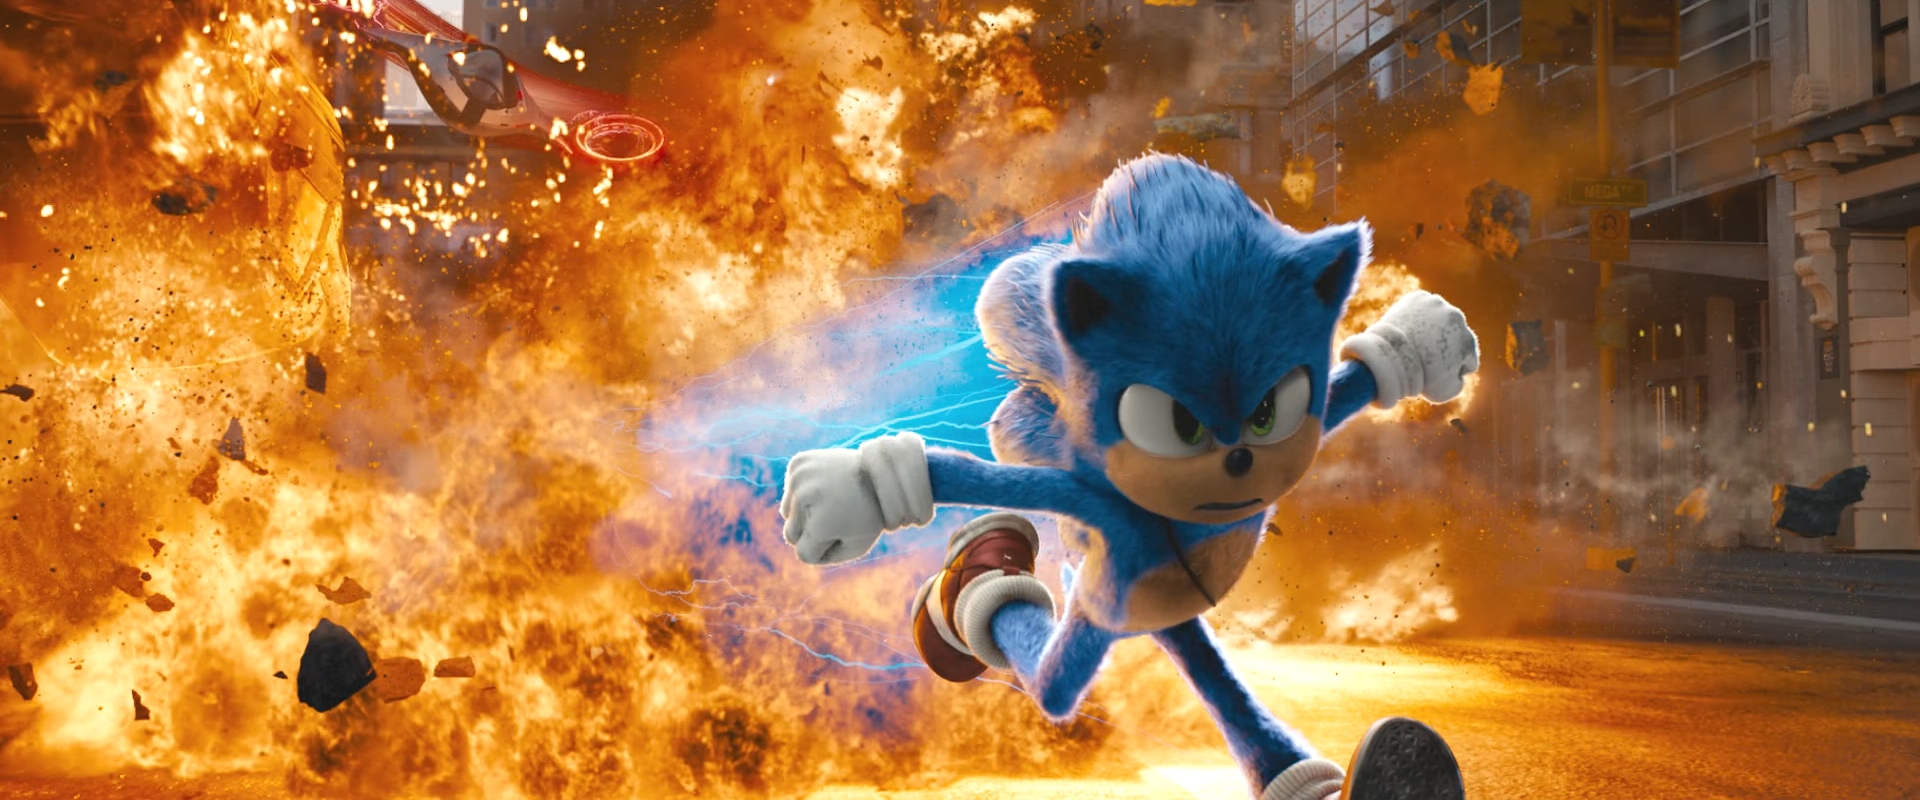 Sonic the Hedgehog 2020-Sonic 15 by GiuseppeDiRosso on DeviantArt